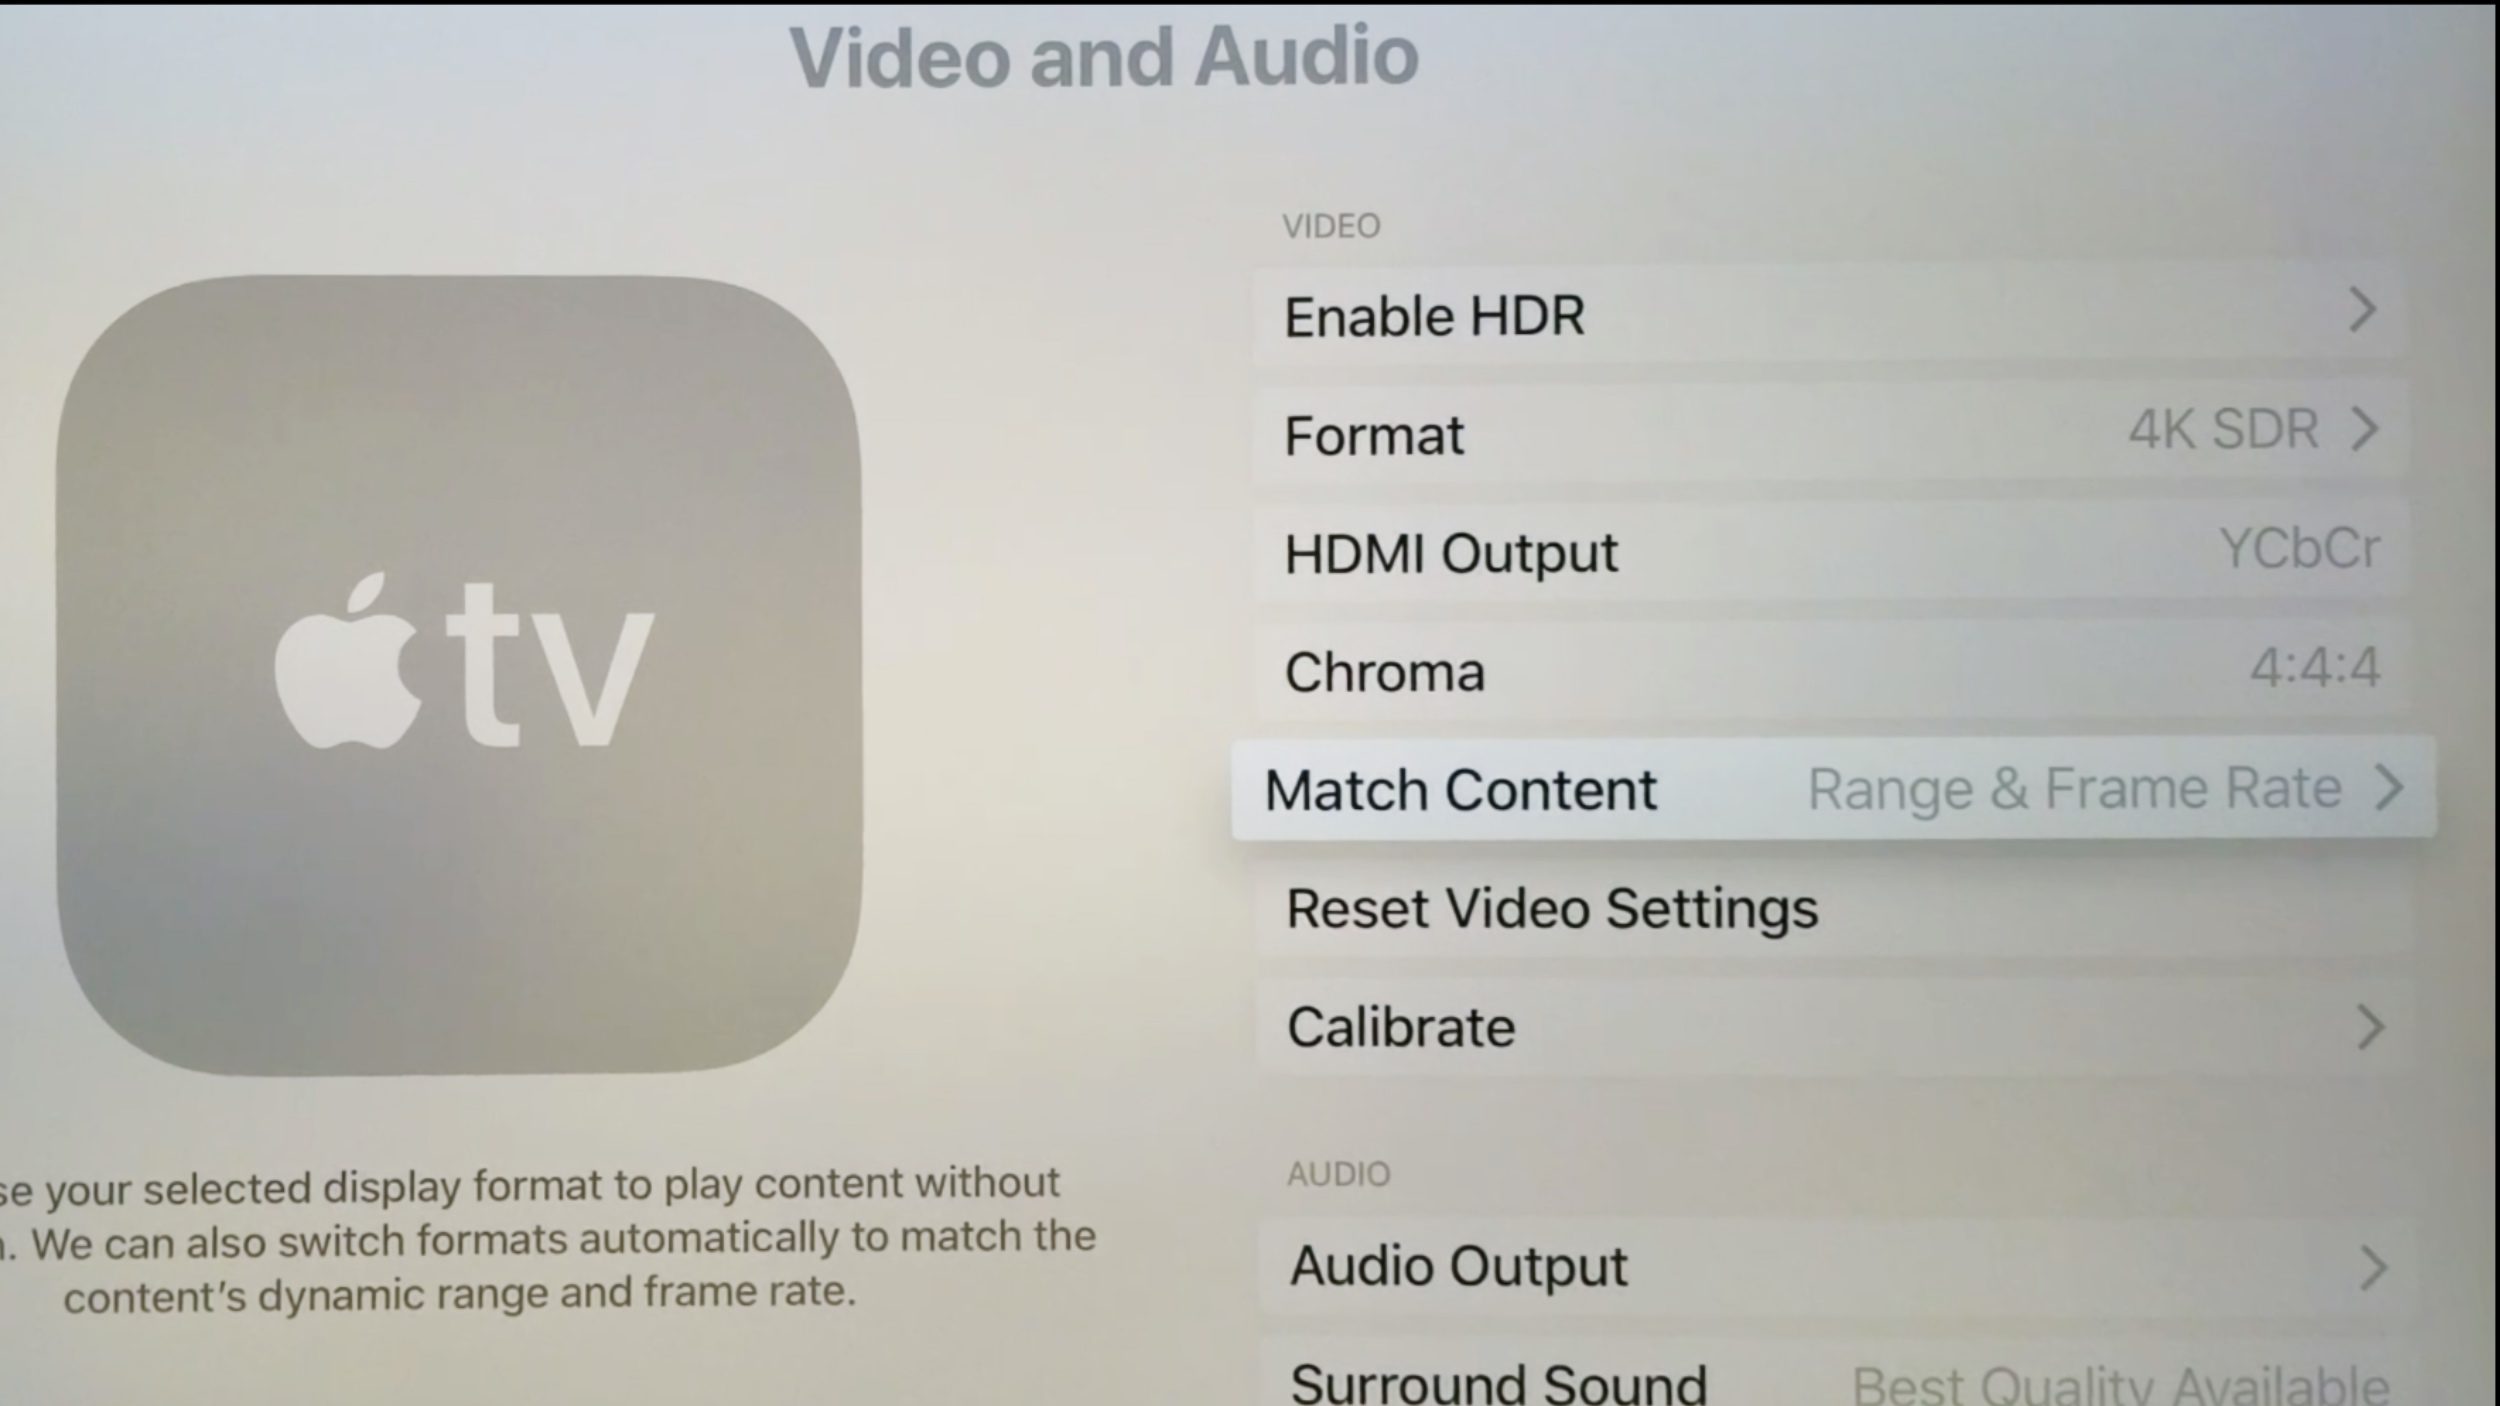 <span href="https://9to5mac.com/2019/12/26/set-up-apple-tv-the-best-experience/">introducción con el Apple TV: Cómo configurar el Apple TV para obtener la mejor experiencia</a>